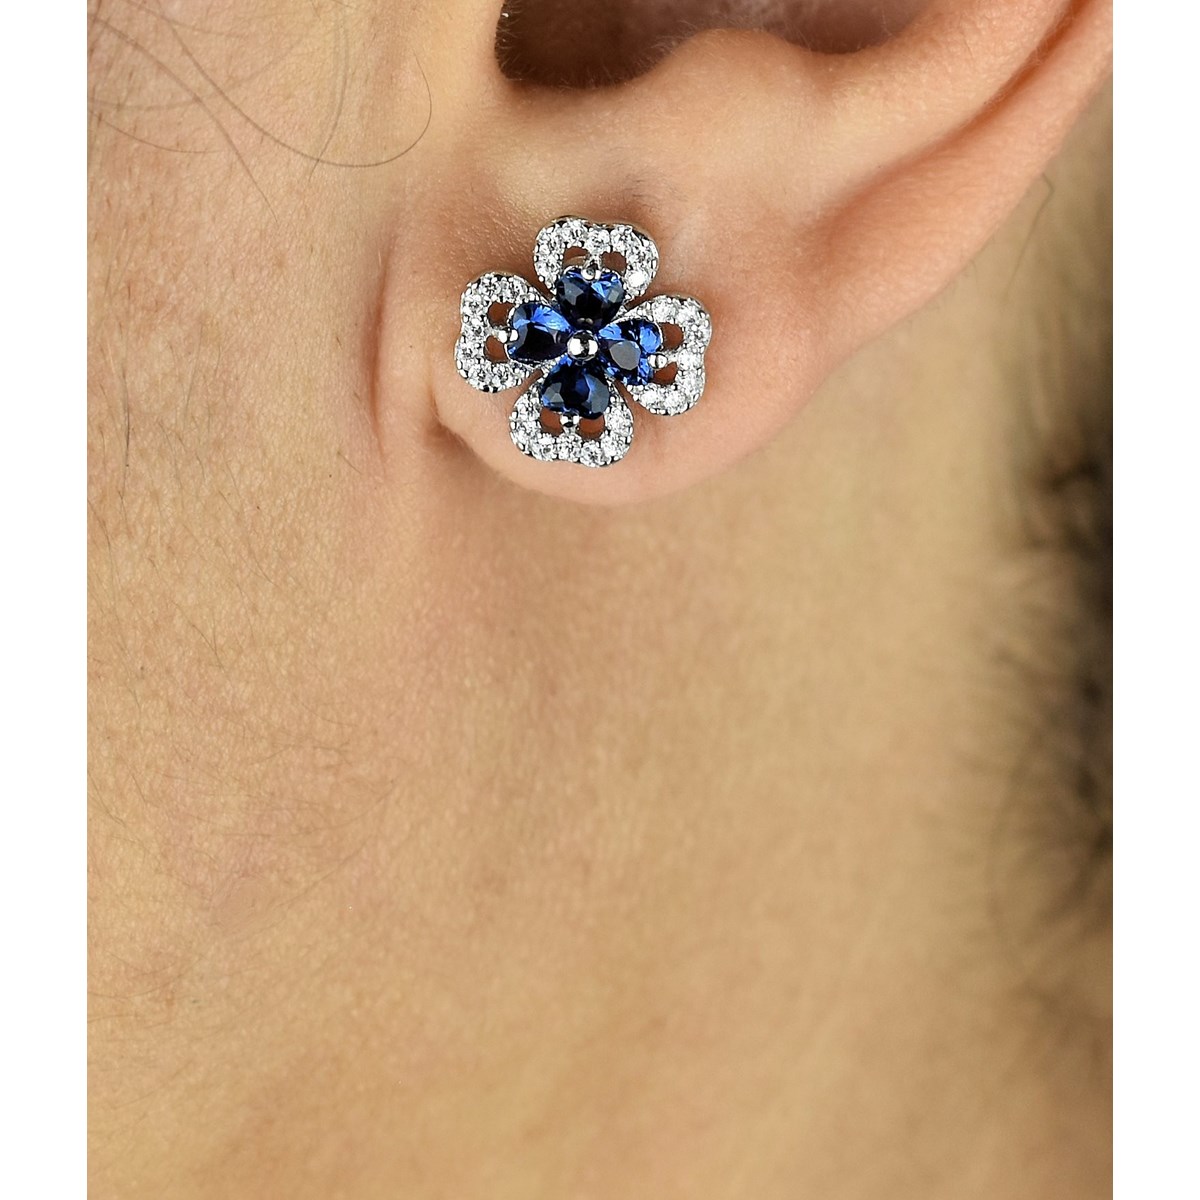 Boucles d'oreilles trèfle de coeurs oxydes de zirconium bleus roi Argent 925 Rhodié - vue 3